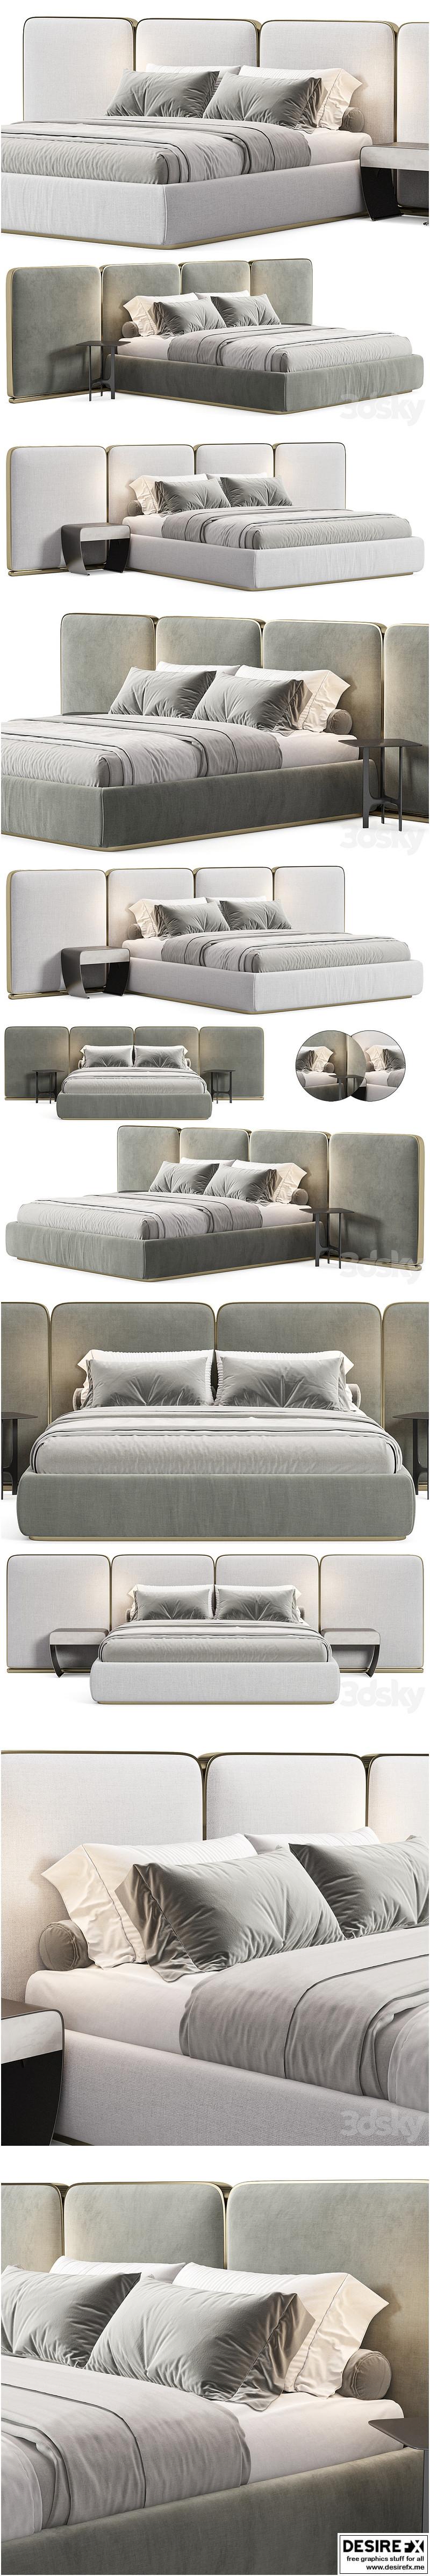 Desire FX 3d models | Gem Upholstered King Queen Bed 2 – 3D Model